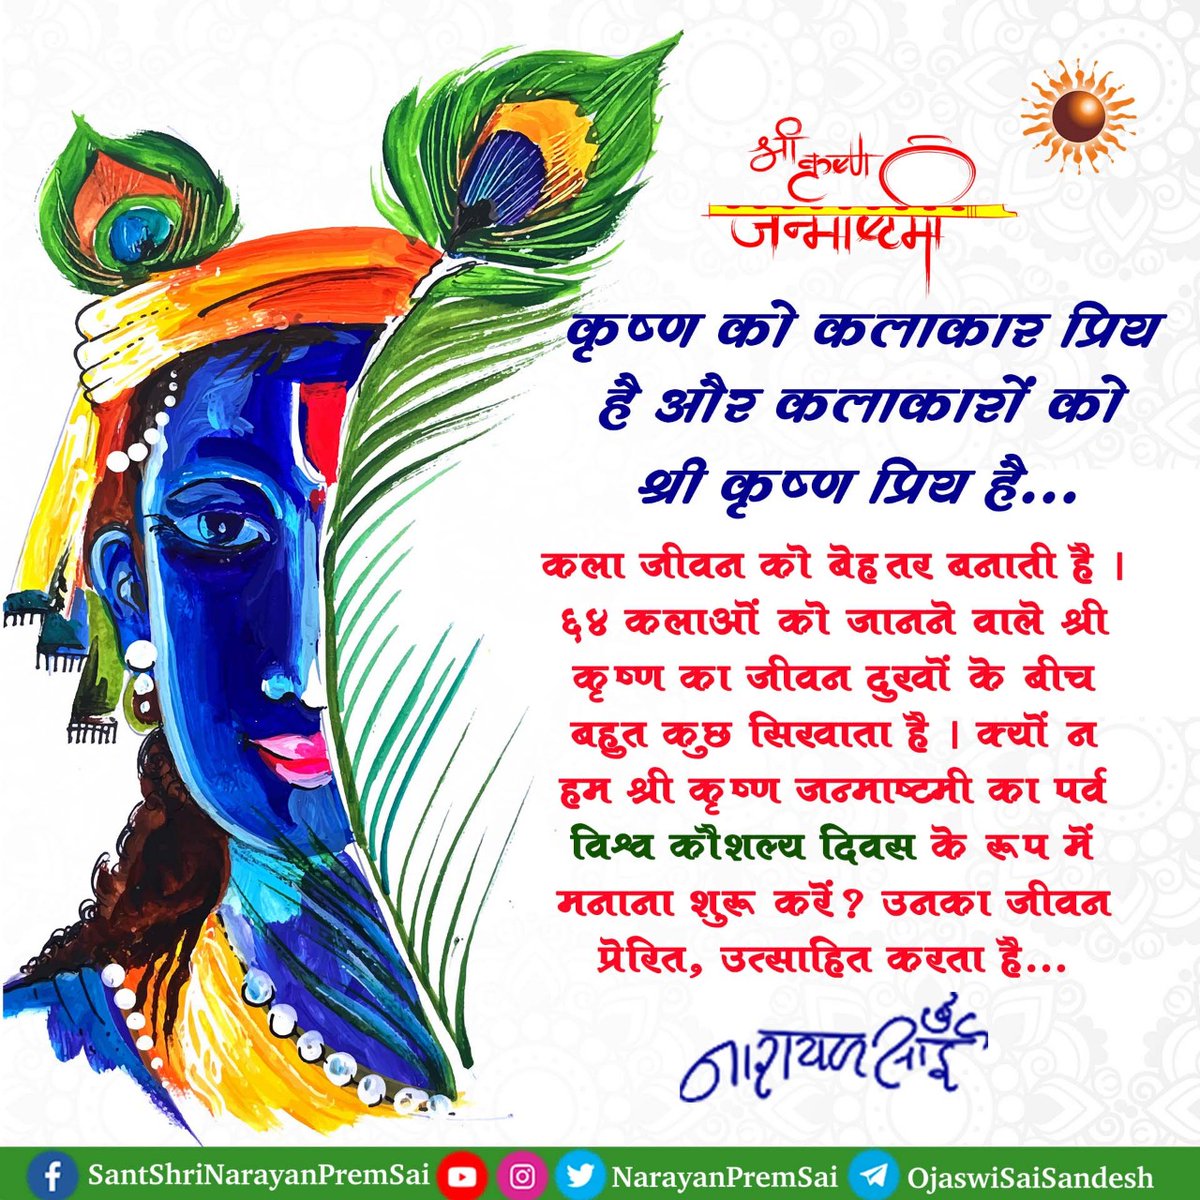 कृष्ण को कलाकार प्रिय है और कलाकारों को श्री कृष्ण प्रिय है... कला जीवन को बेहतर बनाती है। ६४ कलाओं को जानने वाले श्री कृष्ण का जीवन दुखों के बीच बहुत कुछ सिखाता है। क्यों न हम श्री कृष्ण जन्माष्टमी का पर्व विश्व कौशल्य दिवस के रूप में मनाना शुरू करें? #Janmashtami #NarayanSai